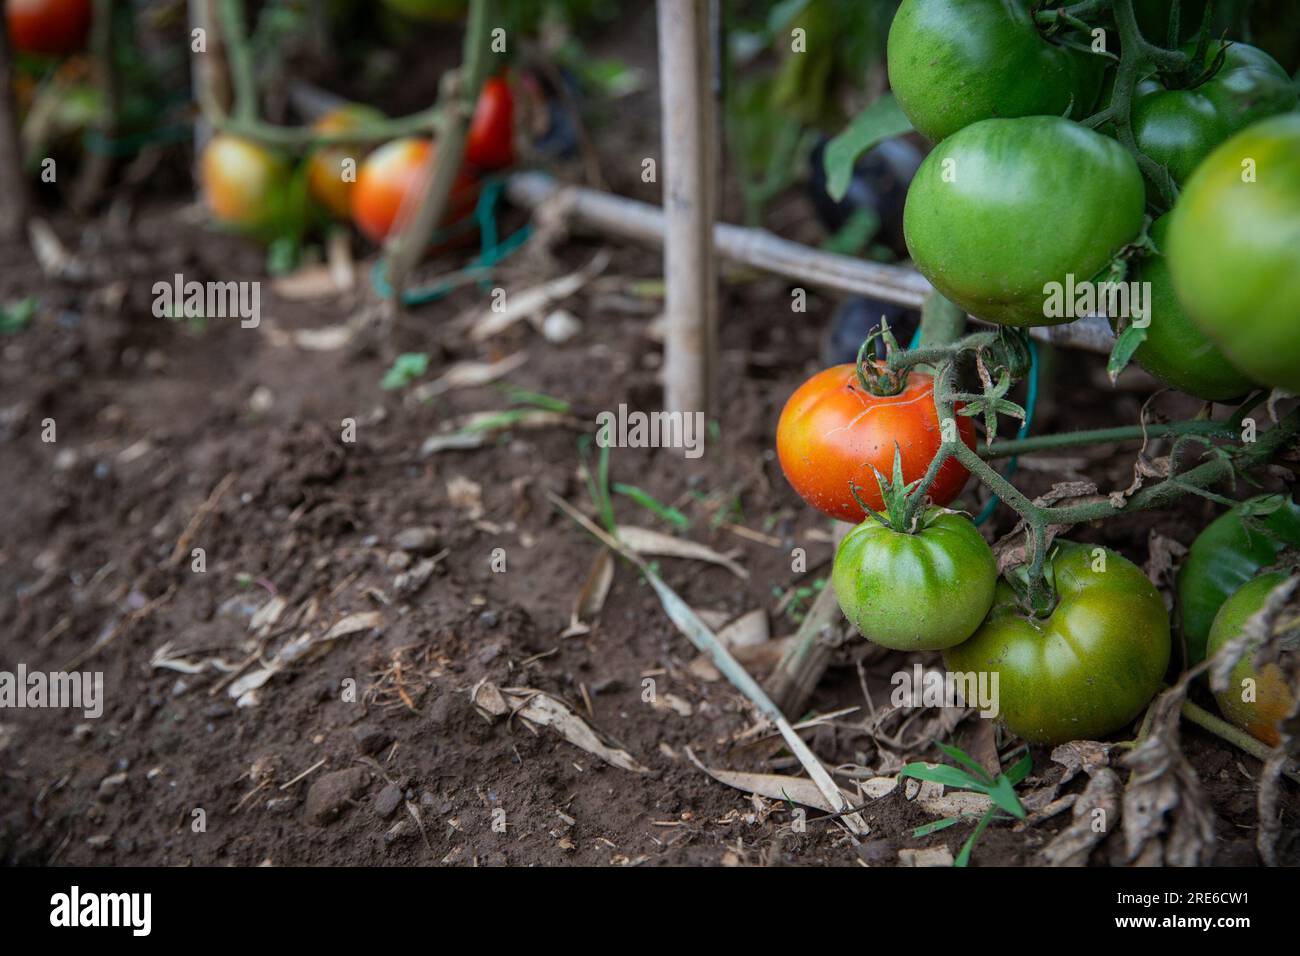 Tomates qui mûrissent dans un potager, produits locaux sains et biologiques Banque D'Images